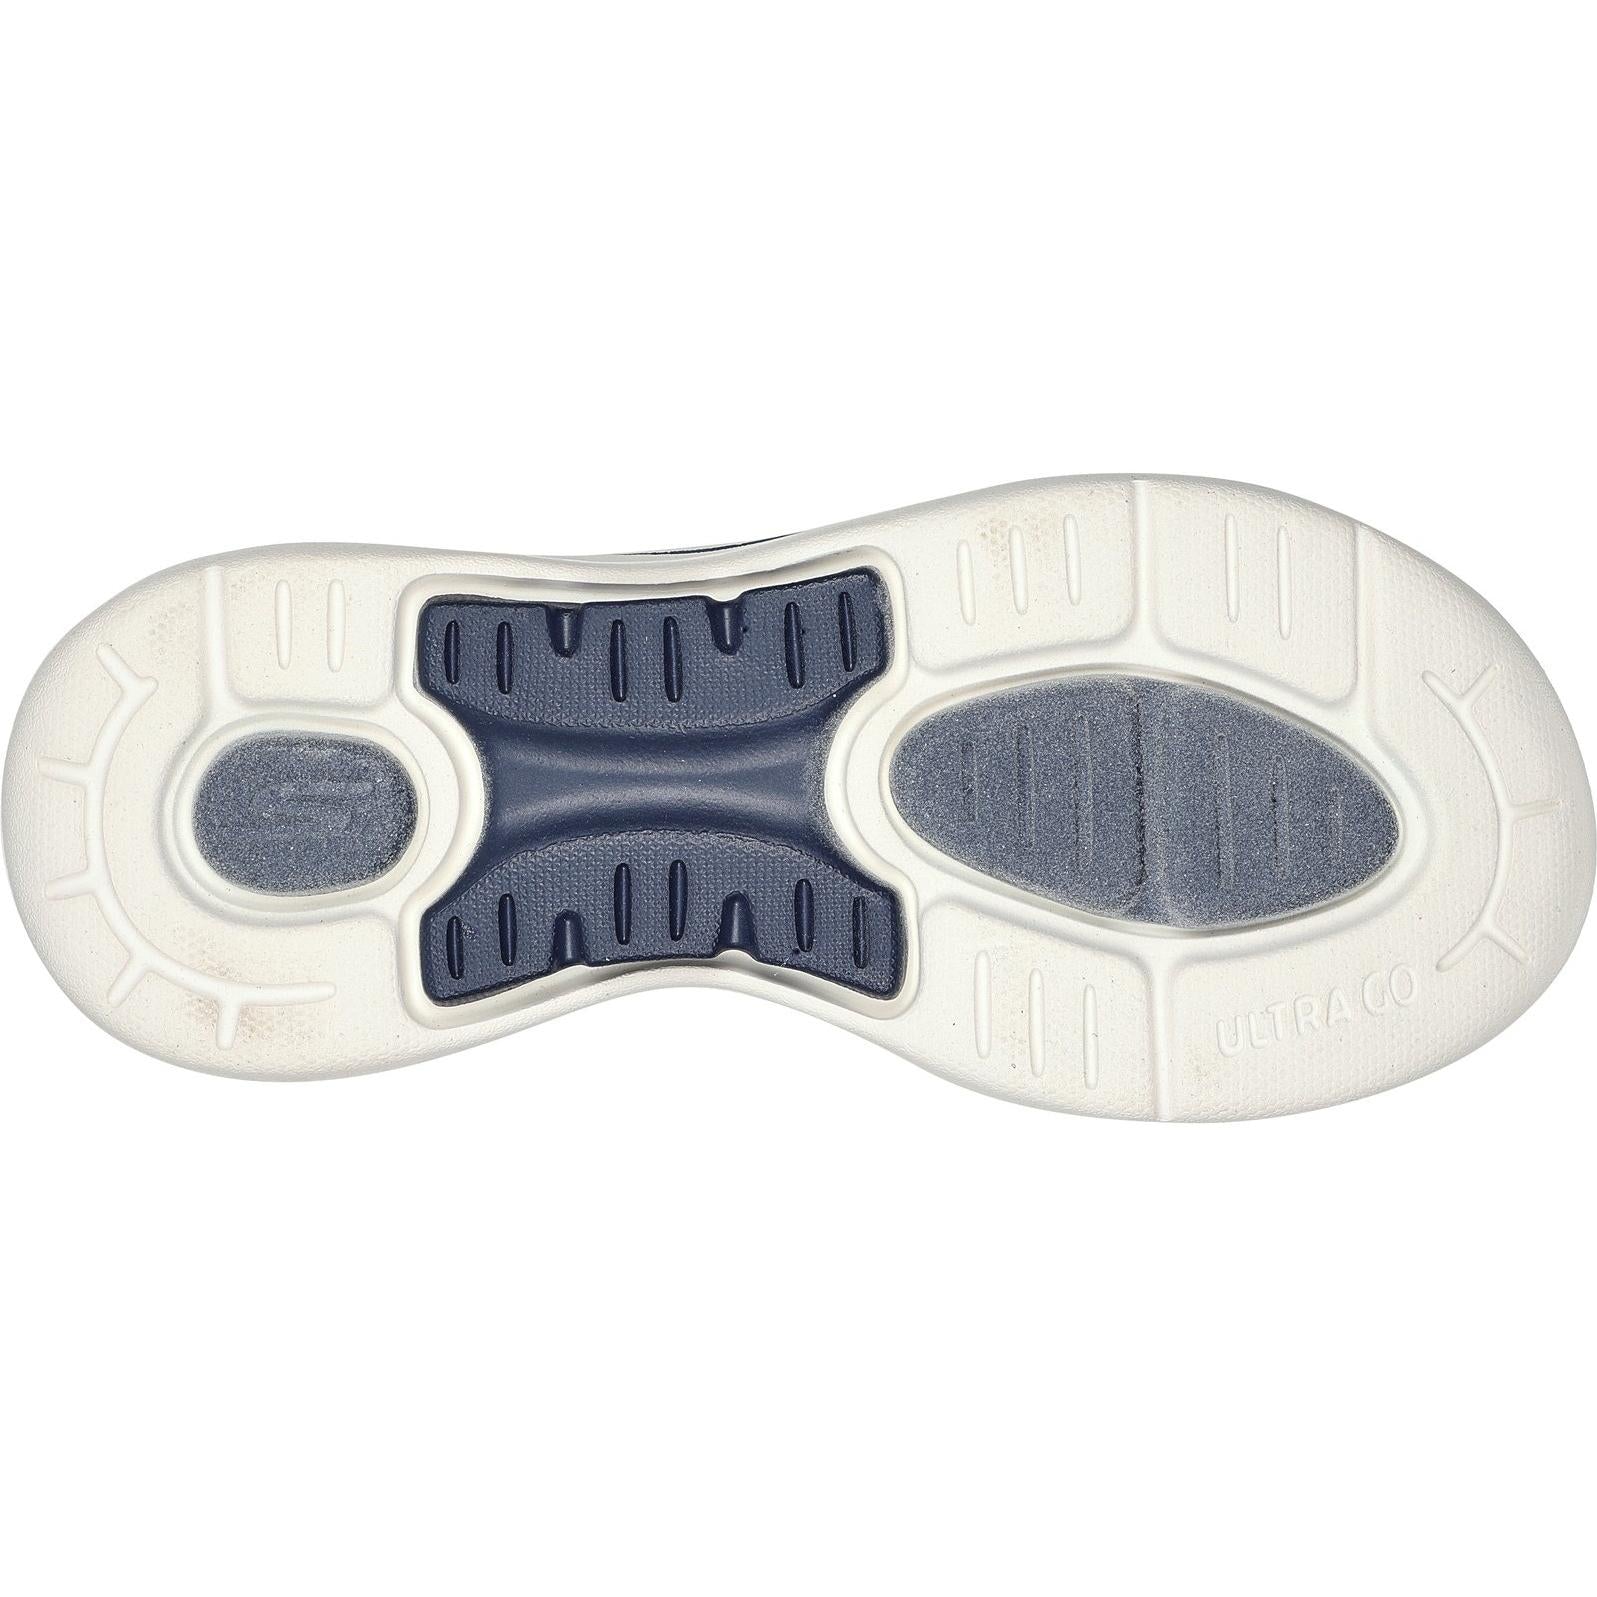 Skechers Go Walk Arch Fit Polished Sandal